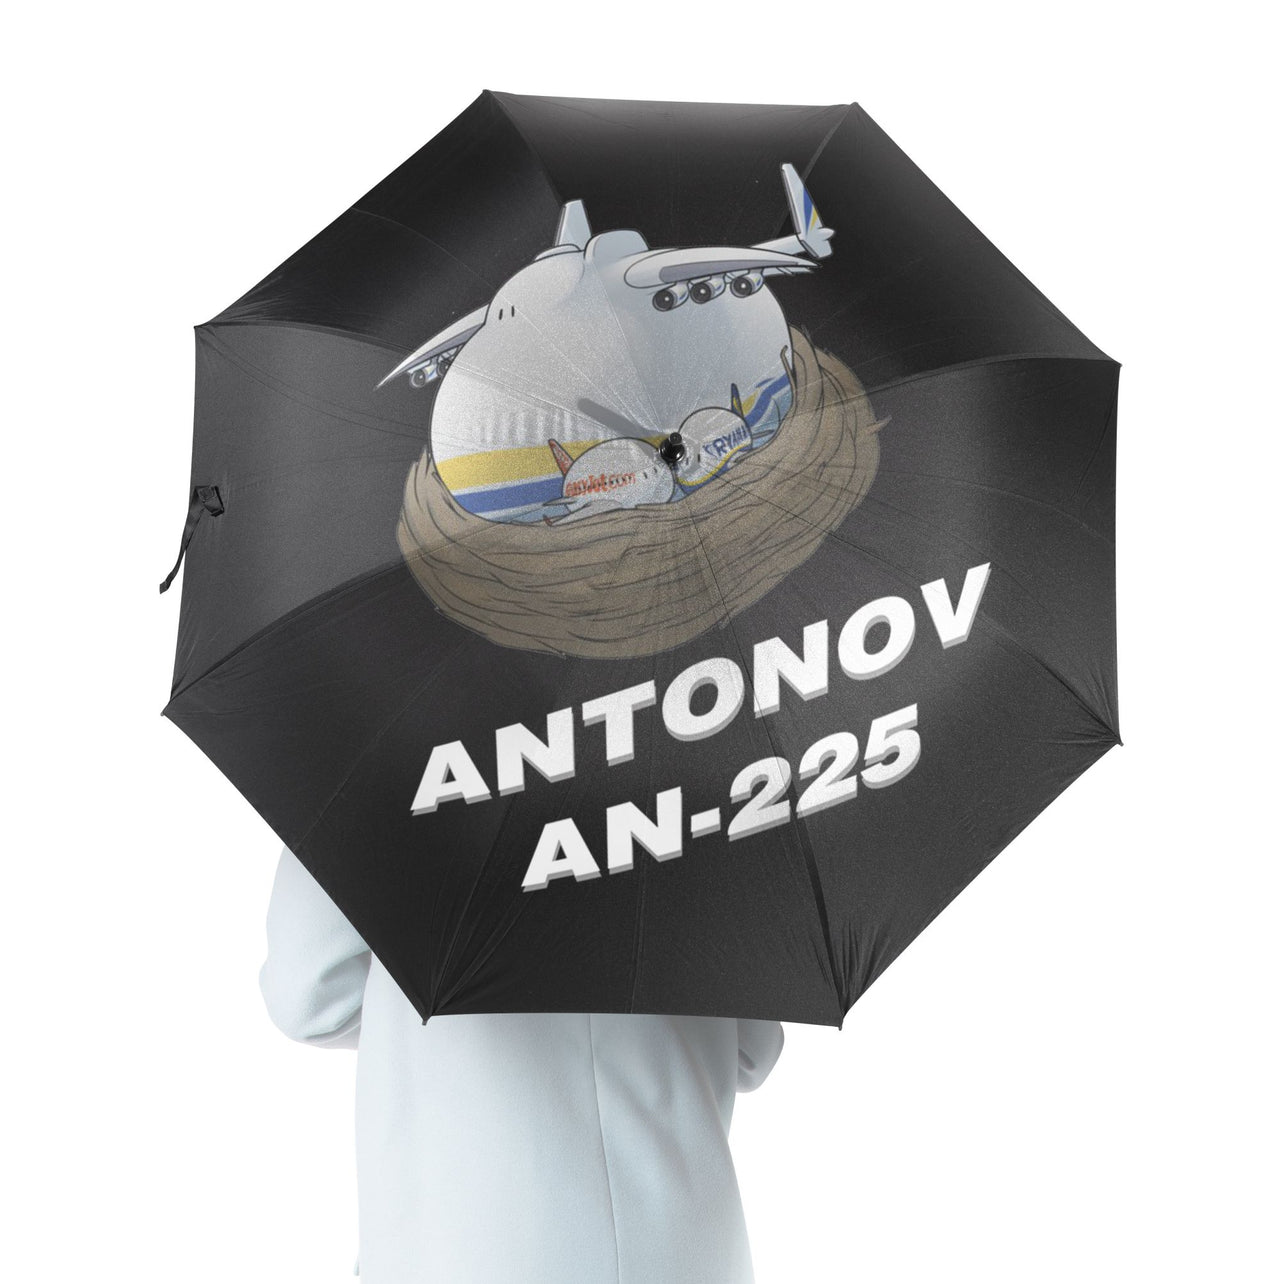 Antonov AN-225 (22) Designed Umbrella